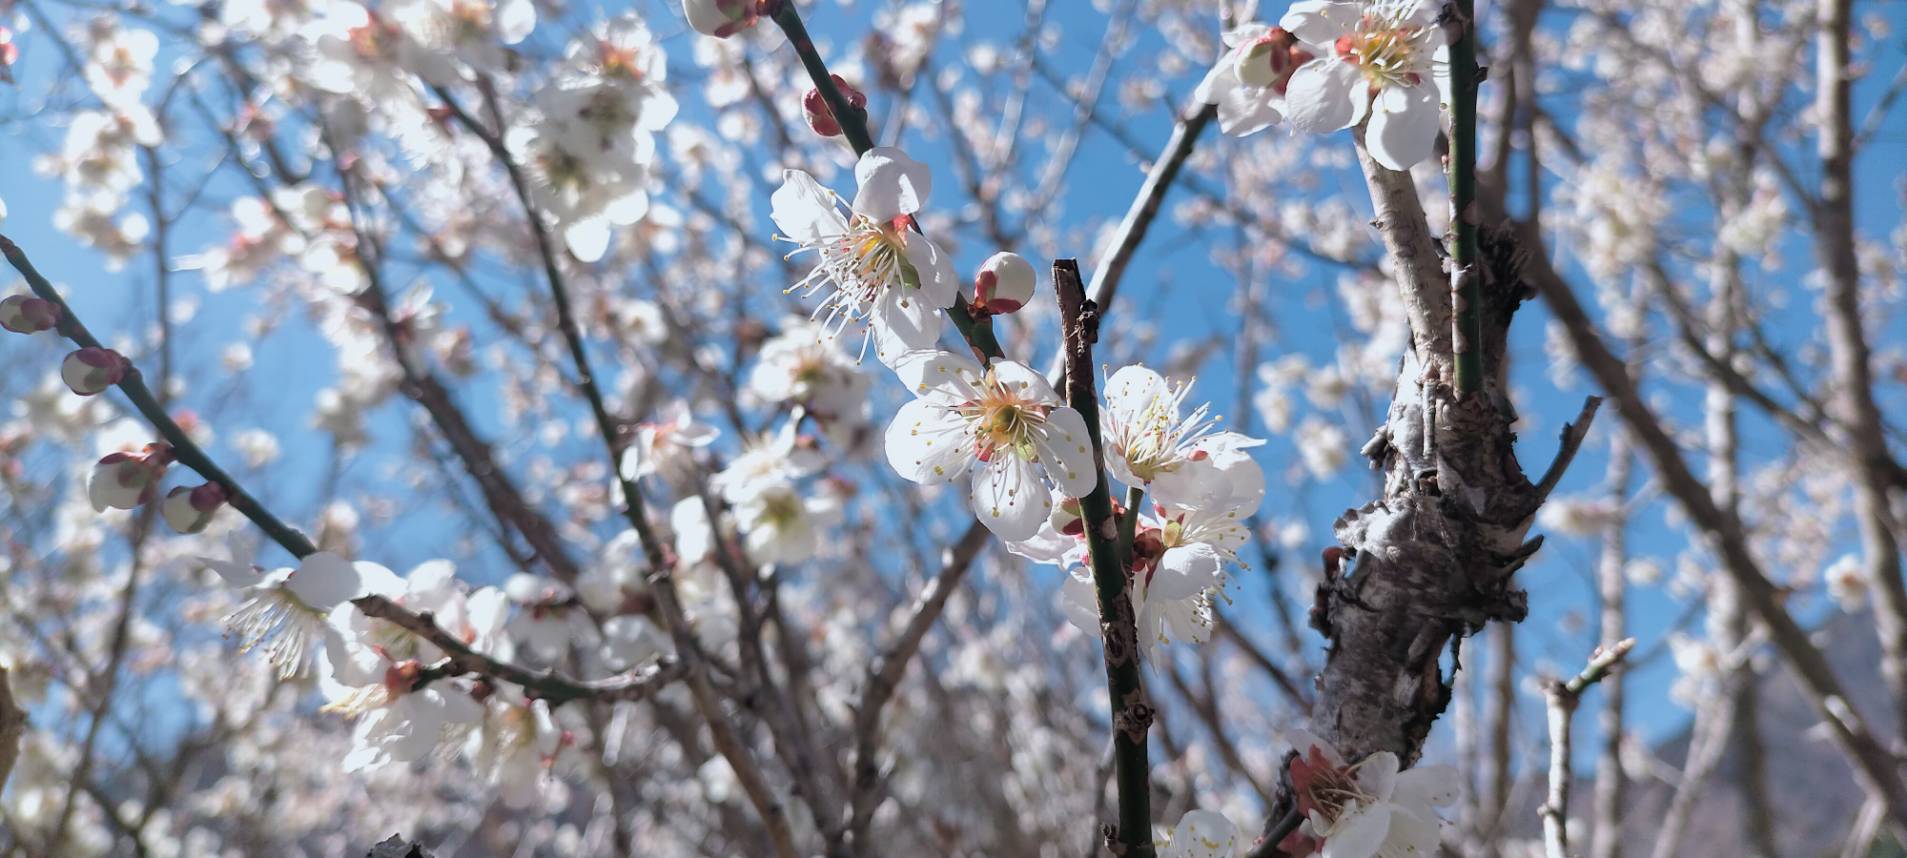 2022年3月15日現在の梅ヶ島コンヤの里、桜園のウメとサクラの様子